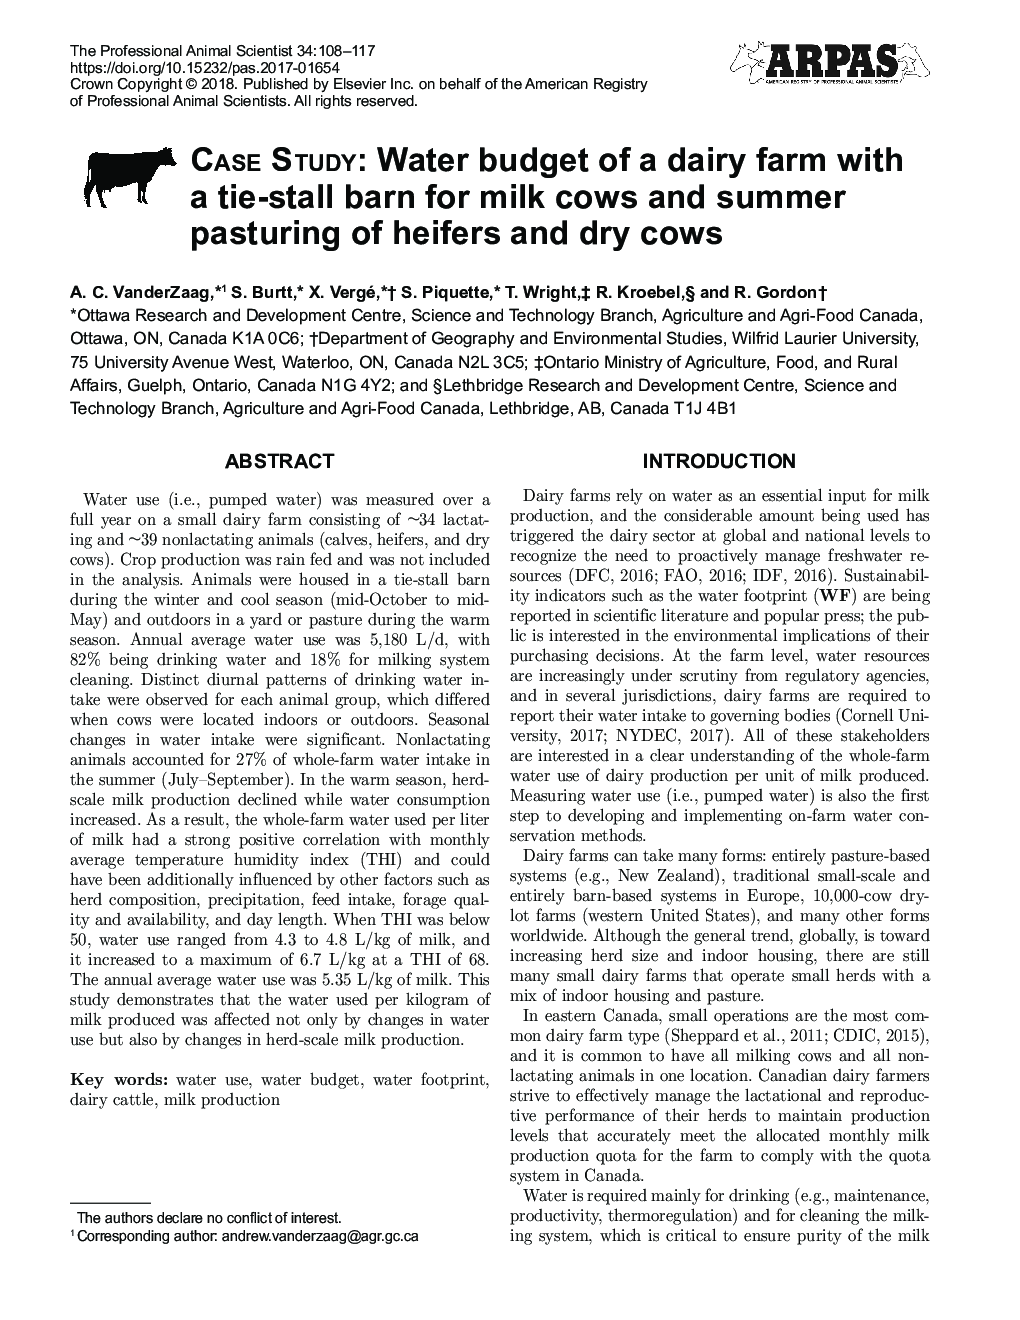 مطالعه موردی: بودجه آب در یک مزرعه شیری با یک انبار کراوات برای گاو شیر و طیور تابستانی تلیسه و گاو خشک 